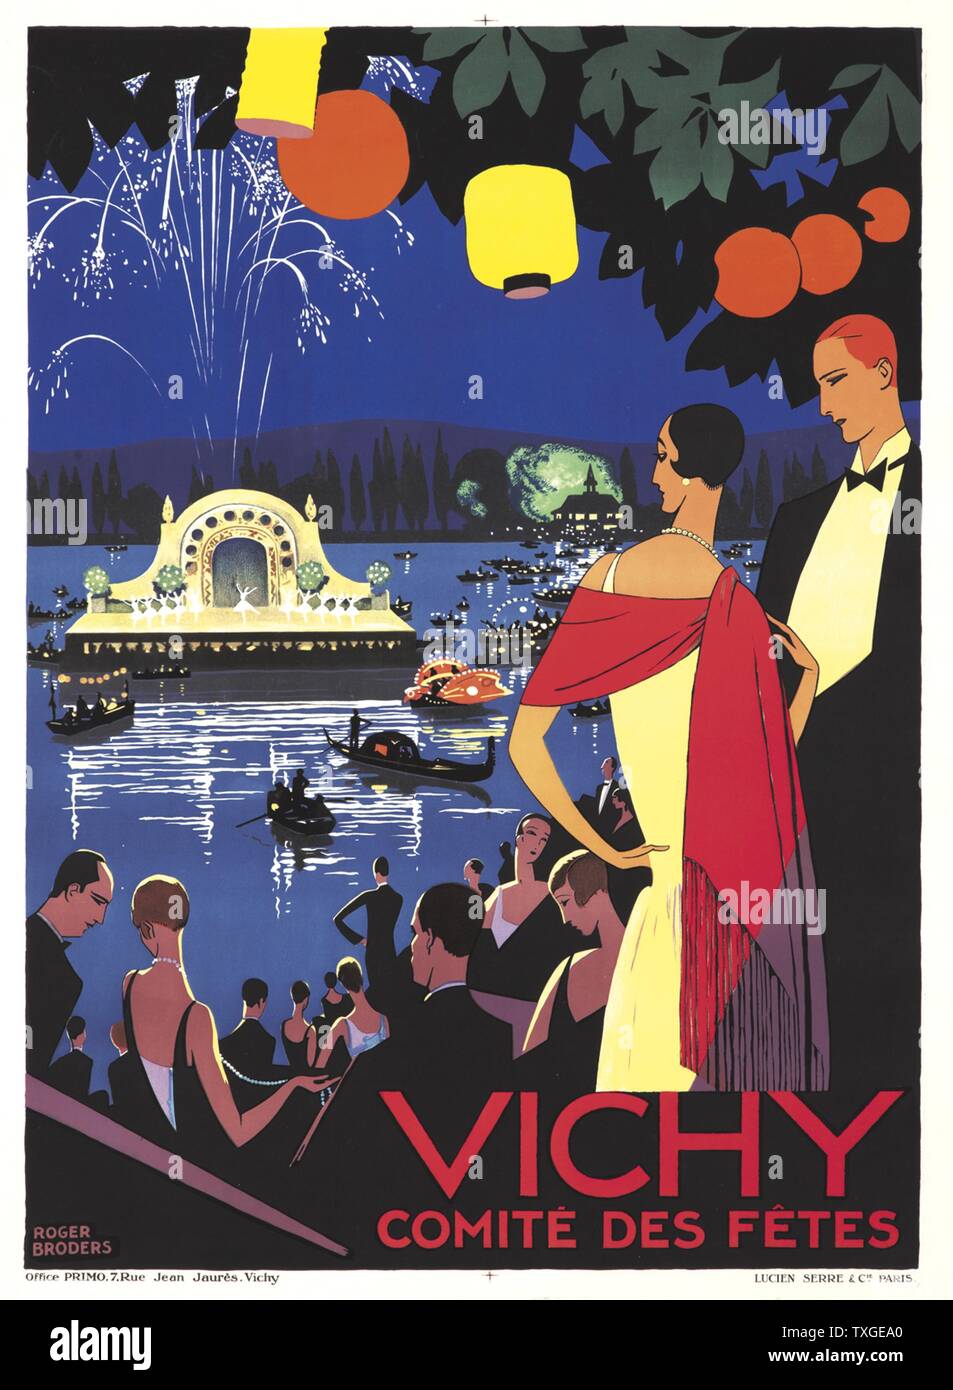 Giclee Bier mit dem Titel "Vichy Comite des fêtes" von Roger Broders, (1883-1953), französischer Illustrator und Künstler. Datiert 1926 Stockfoto